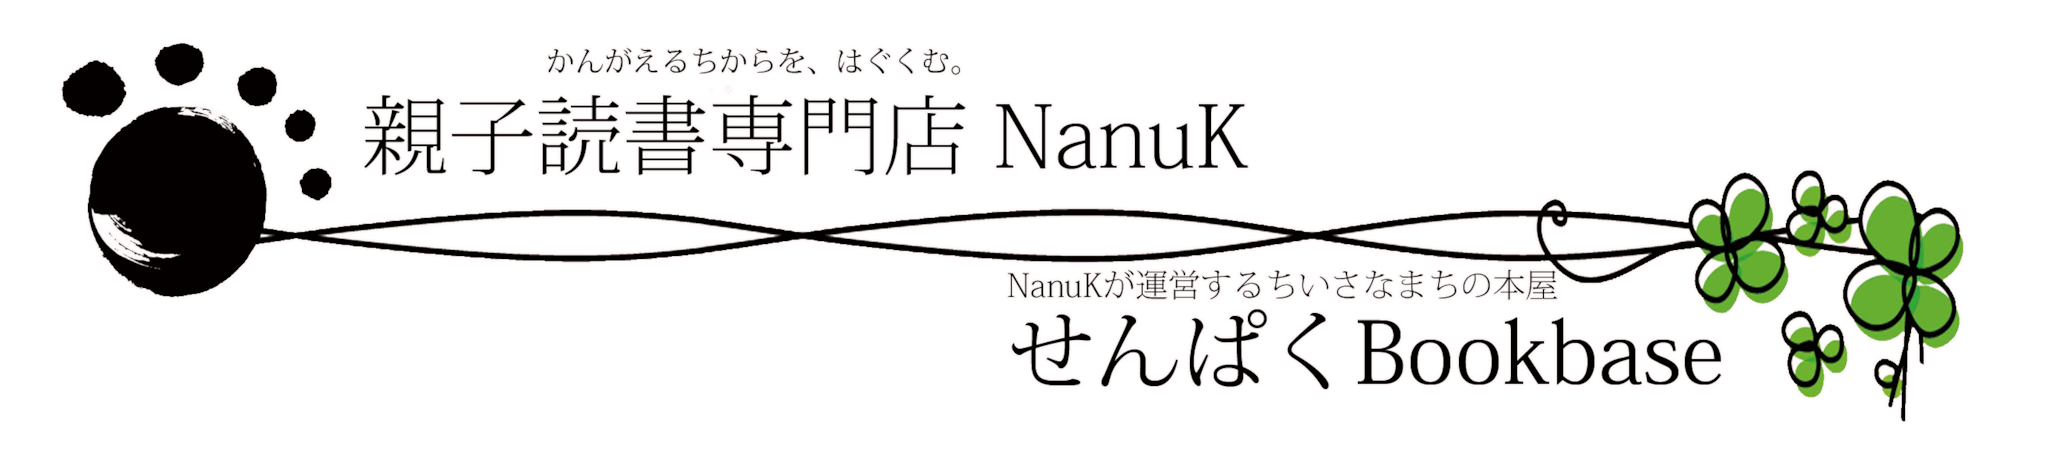 親子読書専門店NanuK